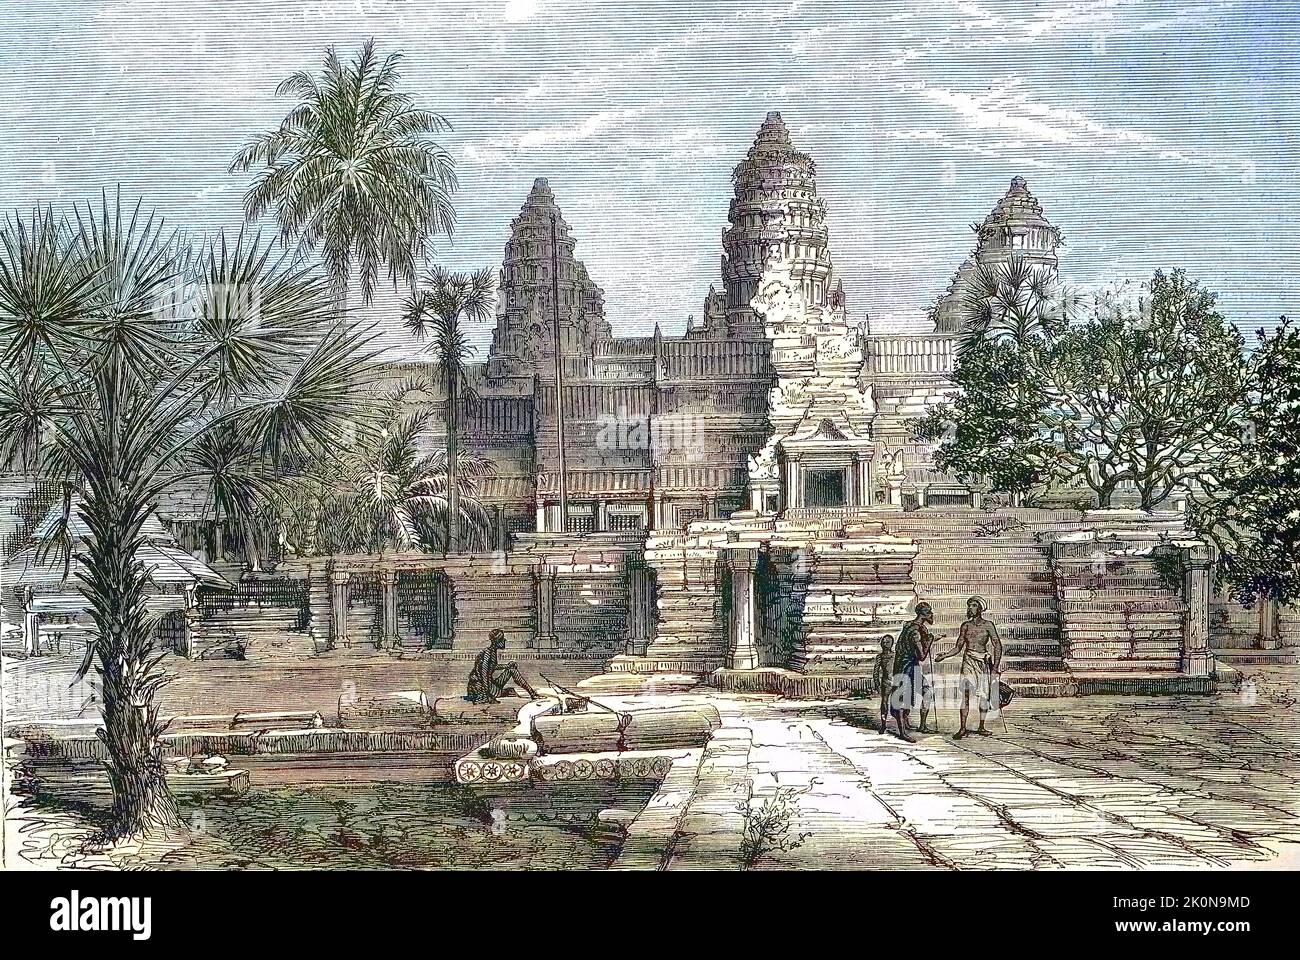 Der buddistische Tempel von Angkor Wat im Jahre 1868, Kambodscha  /  The Buddhist temple of Angkor Wat in 1868, Cambodia, Historisch, digital restaurierte Reproduktion einer Originalvorlage aus dem 19. Jahrhundert, genaues Originaldatum nicht bekannt  /  historical, digital improved reproduction of an original from the 19th century Stock Photo